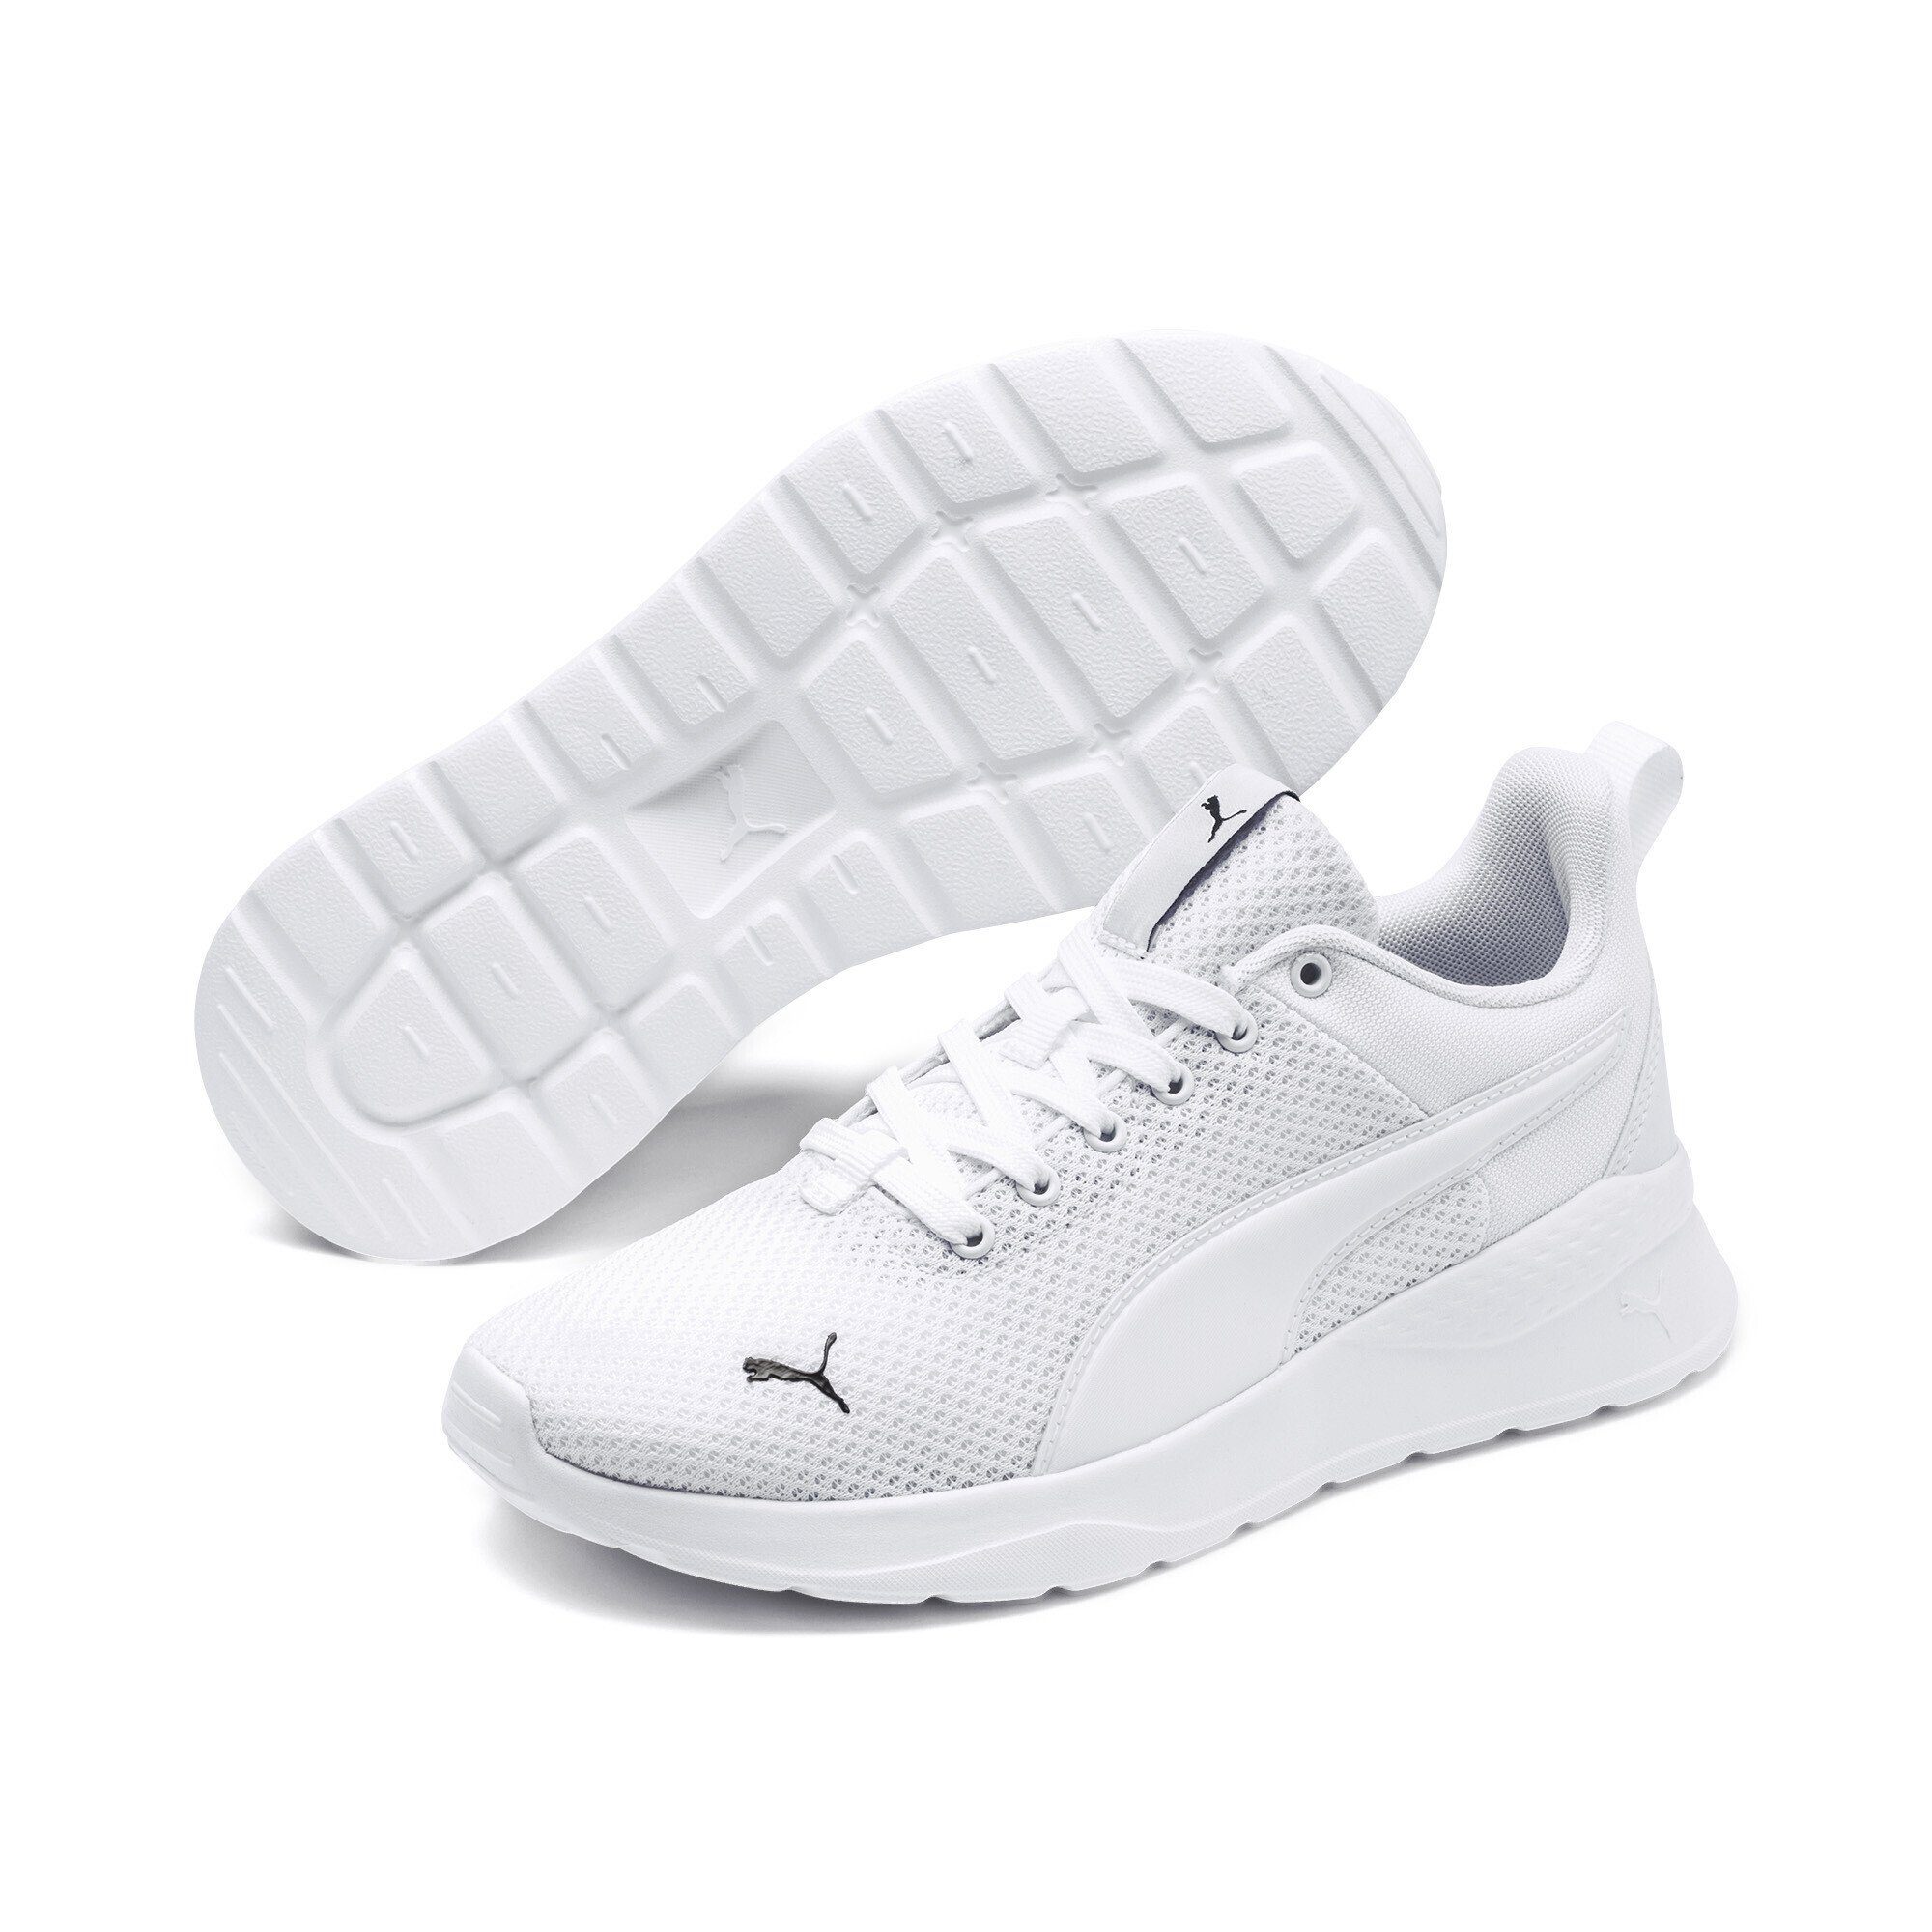 PUMA Anzarun Lite Sneakers Jugendliche Laufschuh White